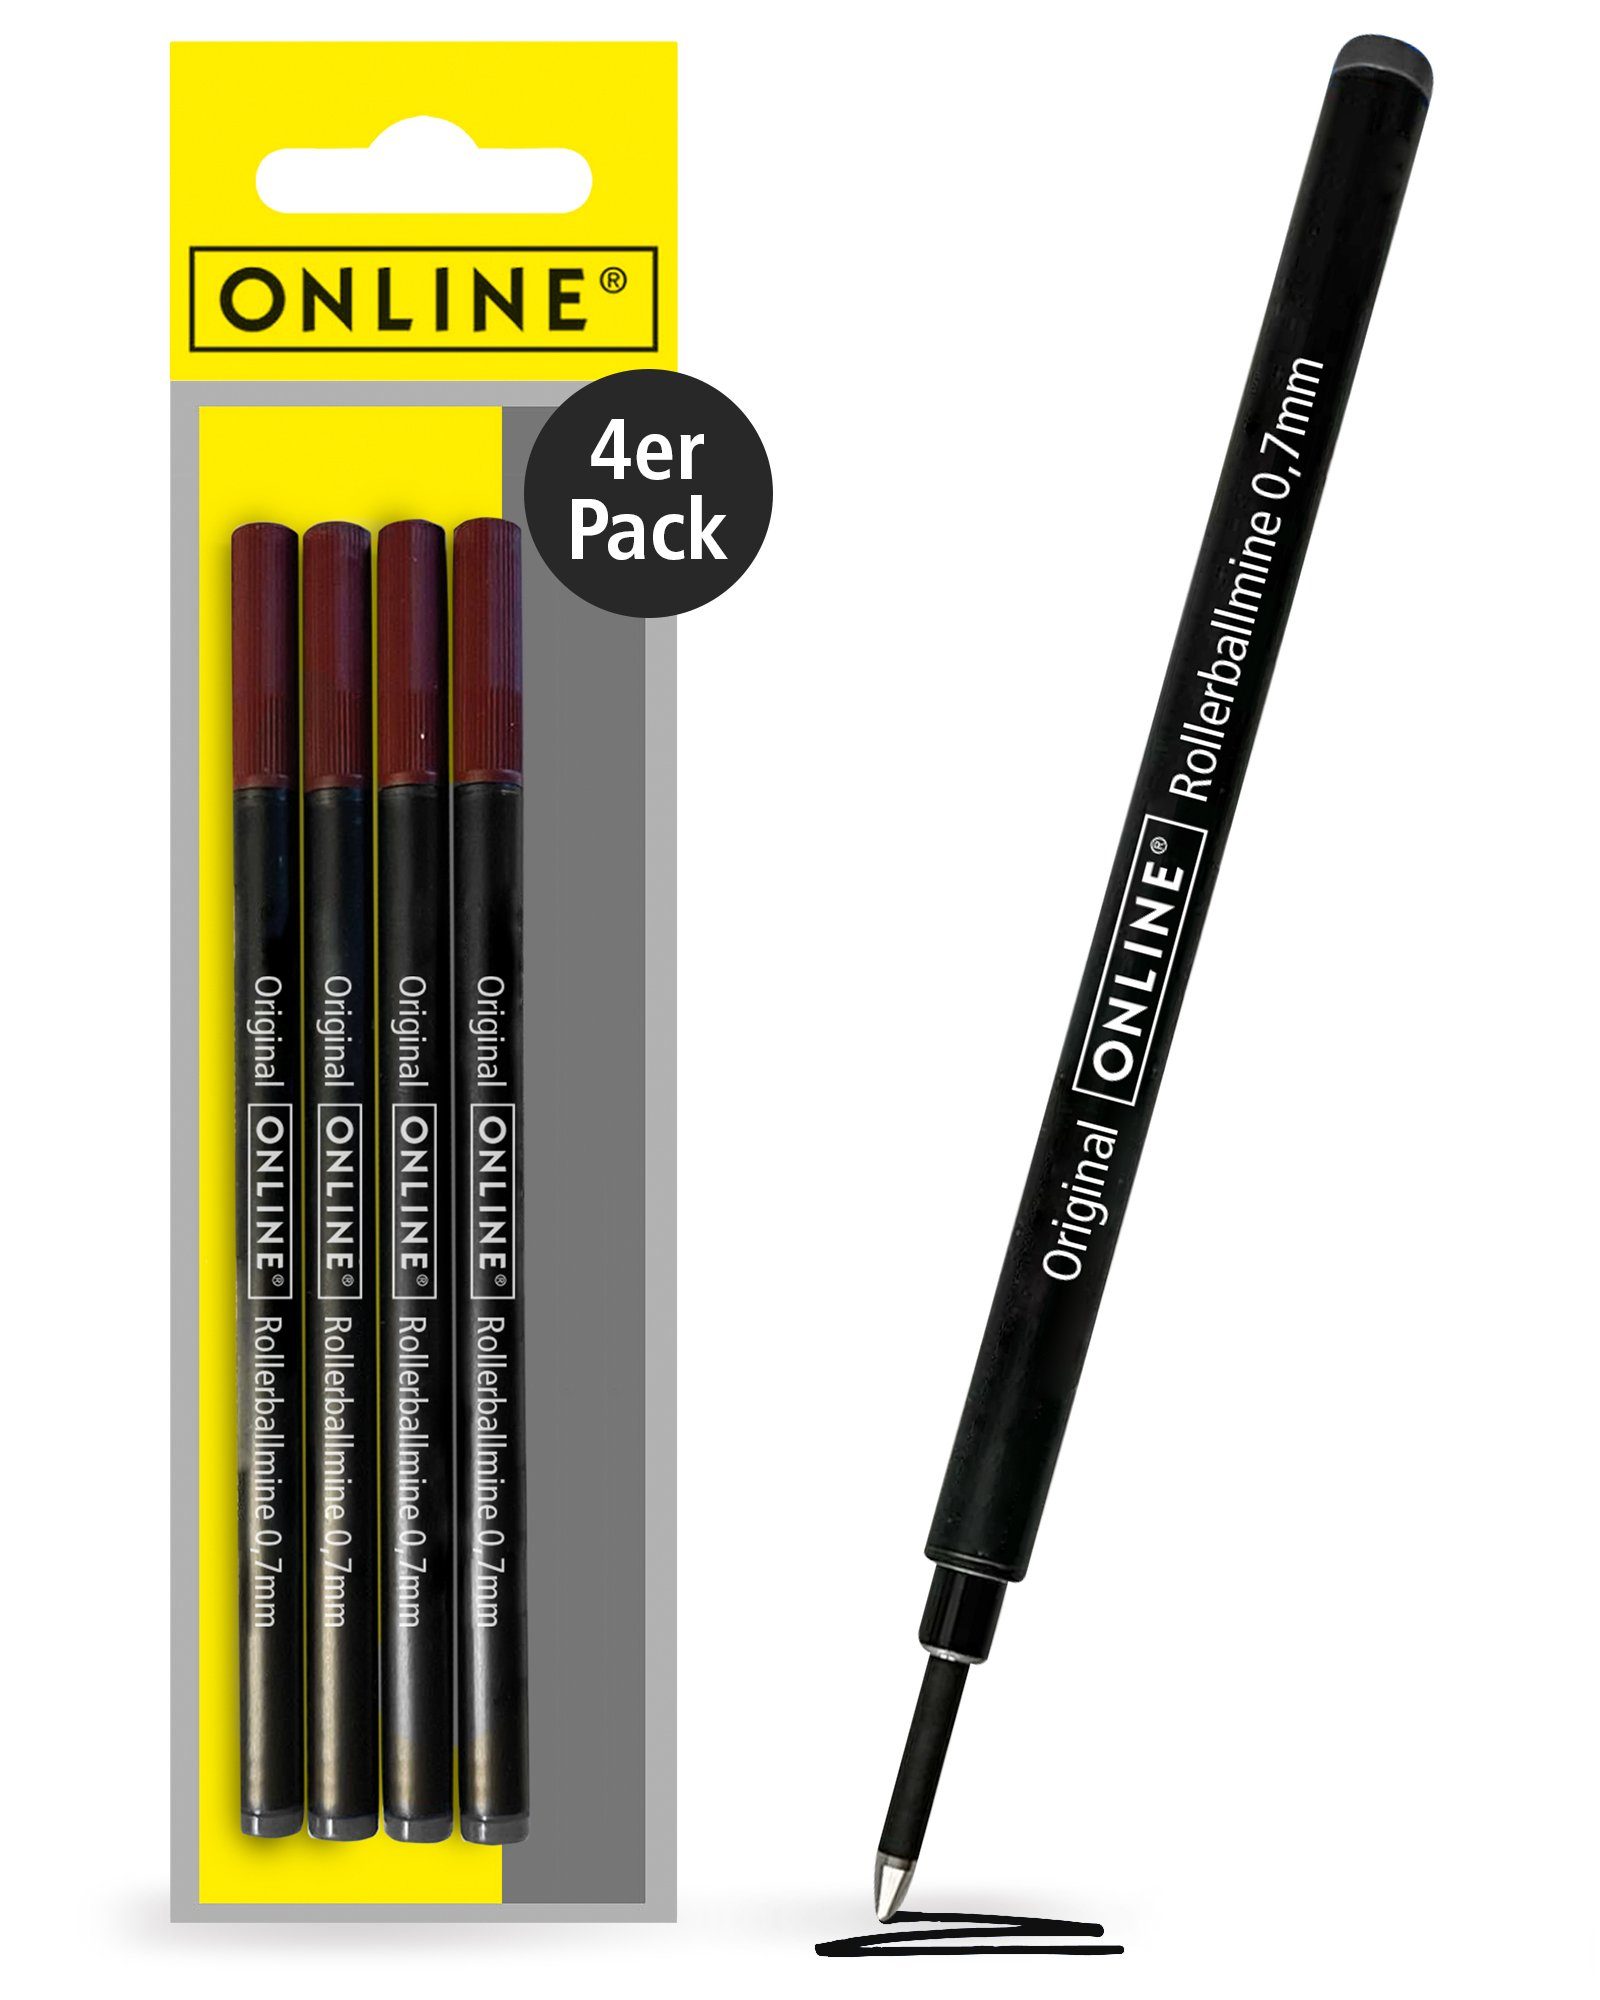 Online Pen verschiedener Tintenrollern Mine, mit Marken Rollerball schwarz Tintenroller kompatibel